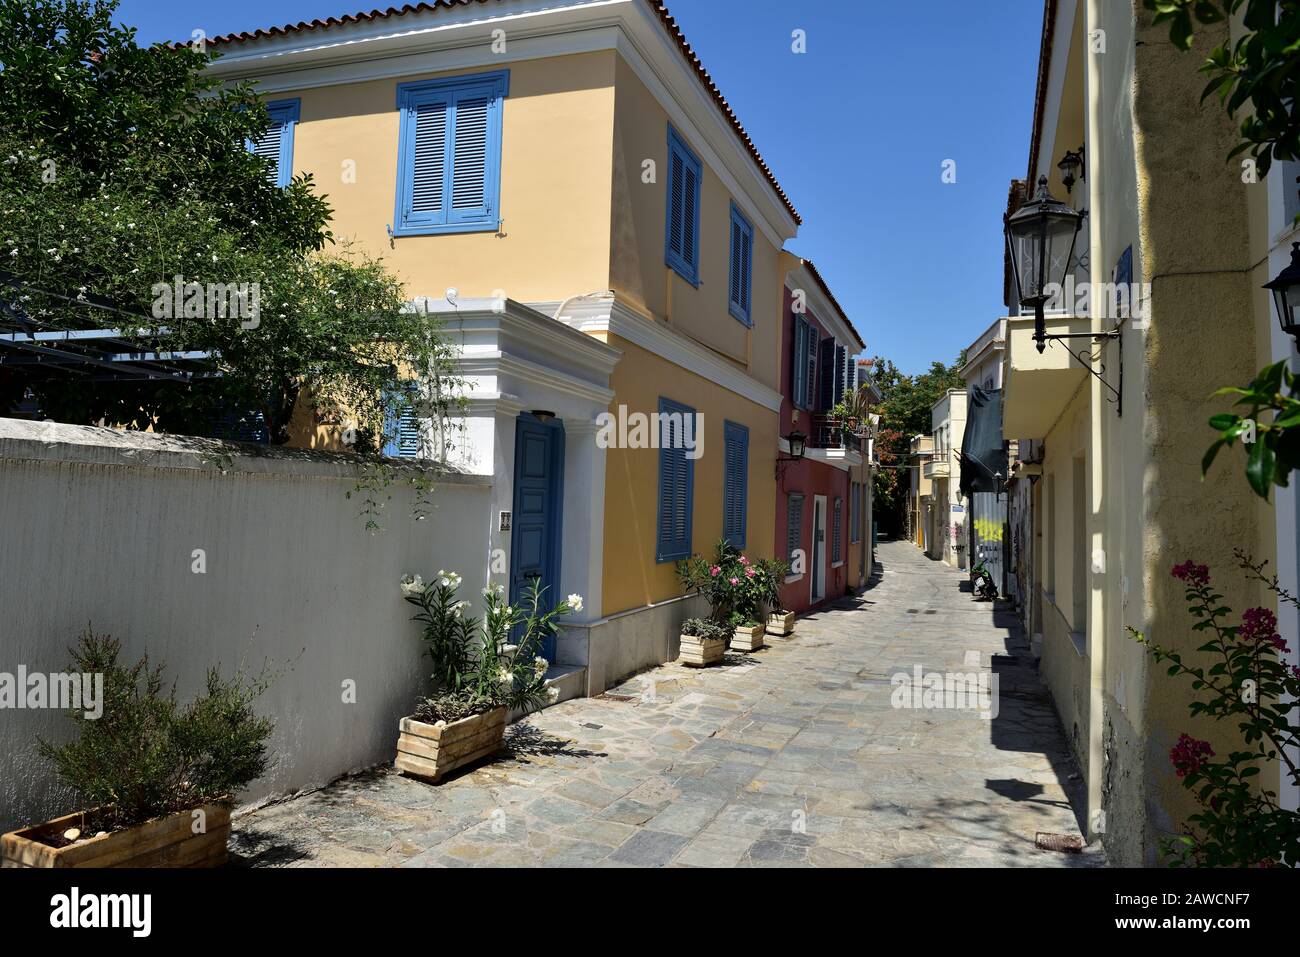 Athen, Griechenland - 7. Juli 2018: Buntes Haus in einer ruhigen Straße in Athen Stockfoto